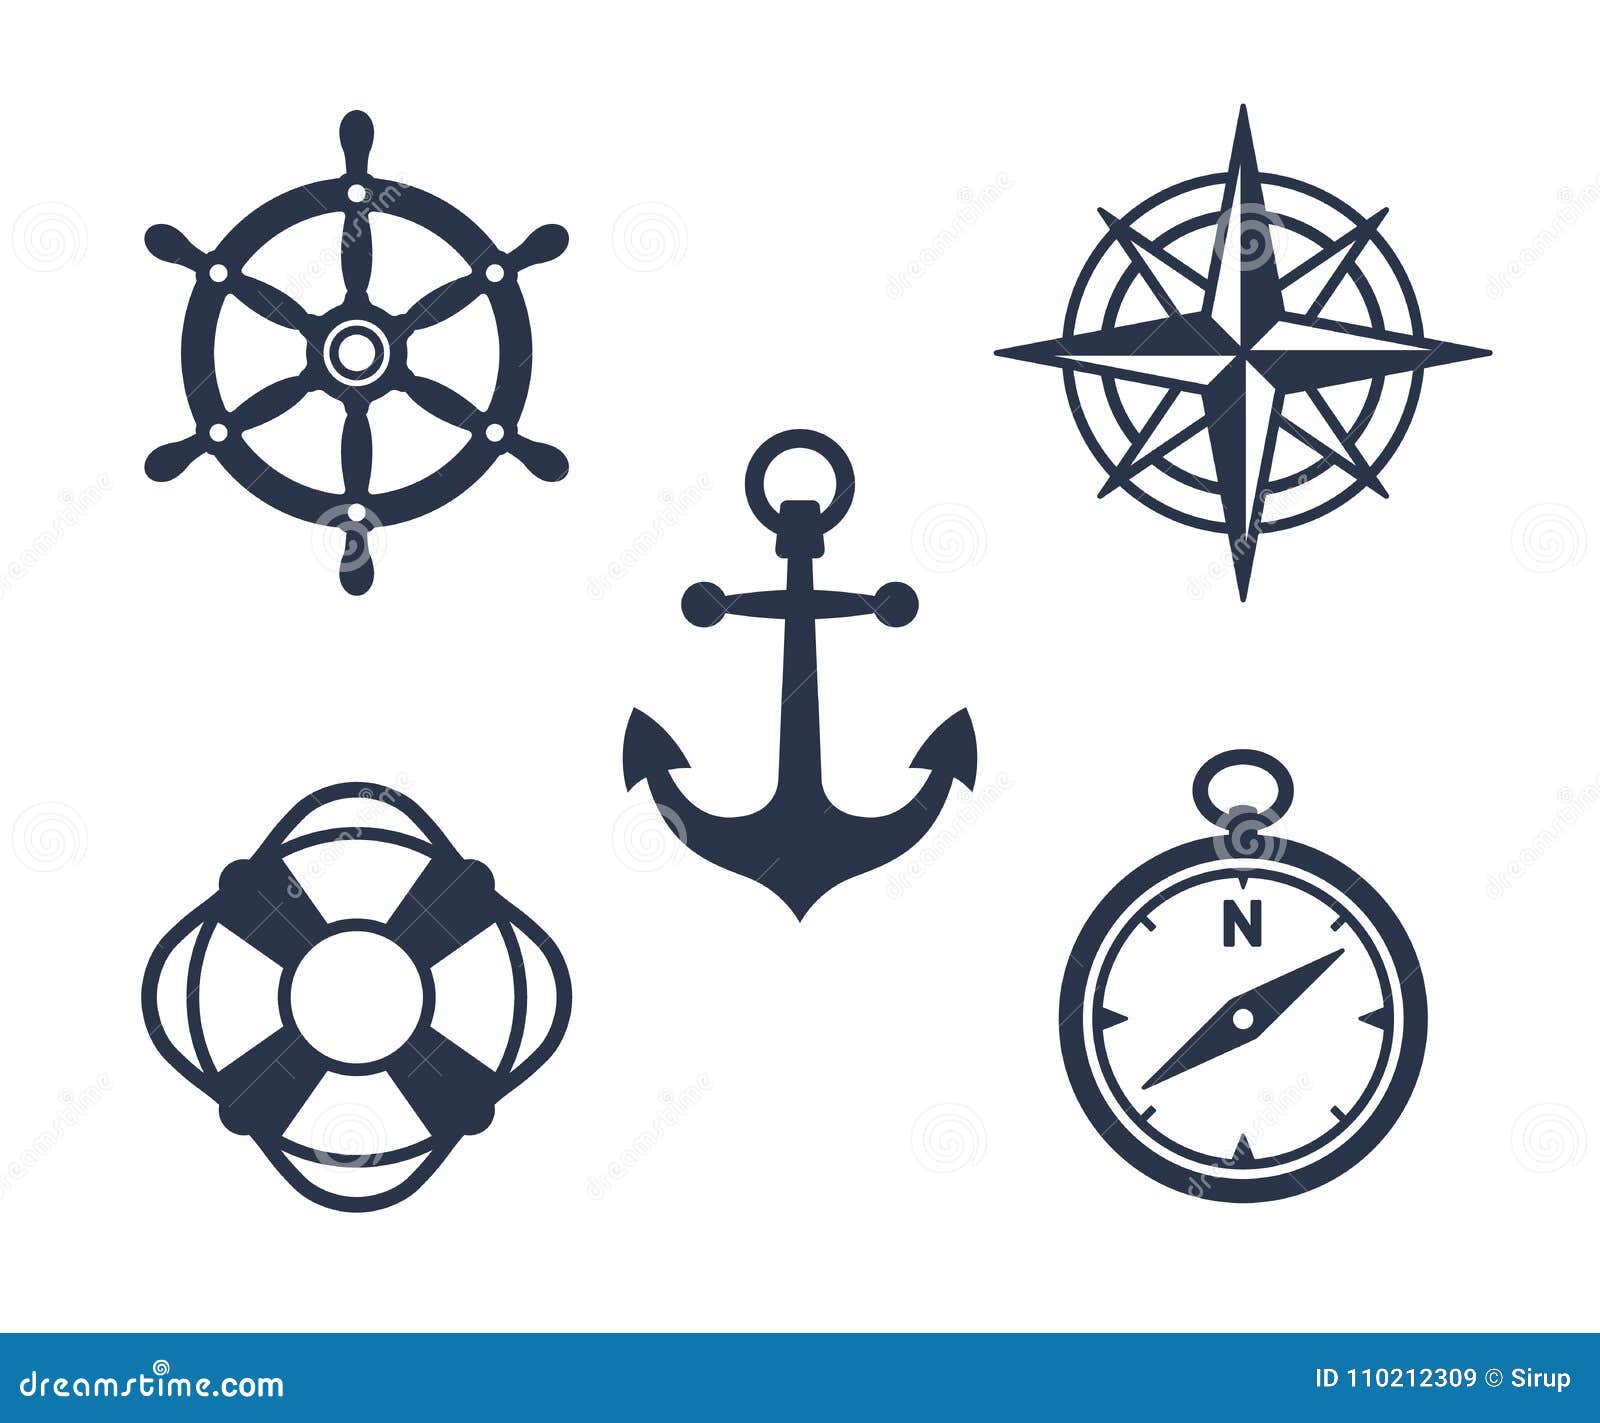 set of marine, maritime or nautical icons